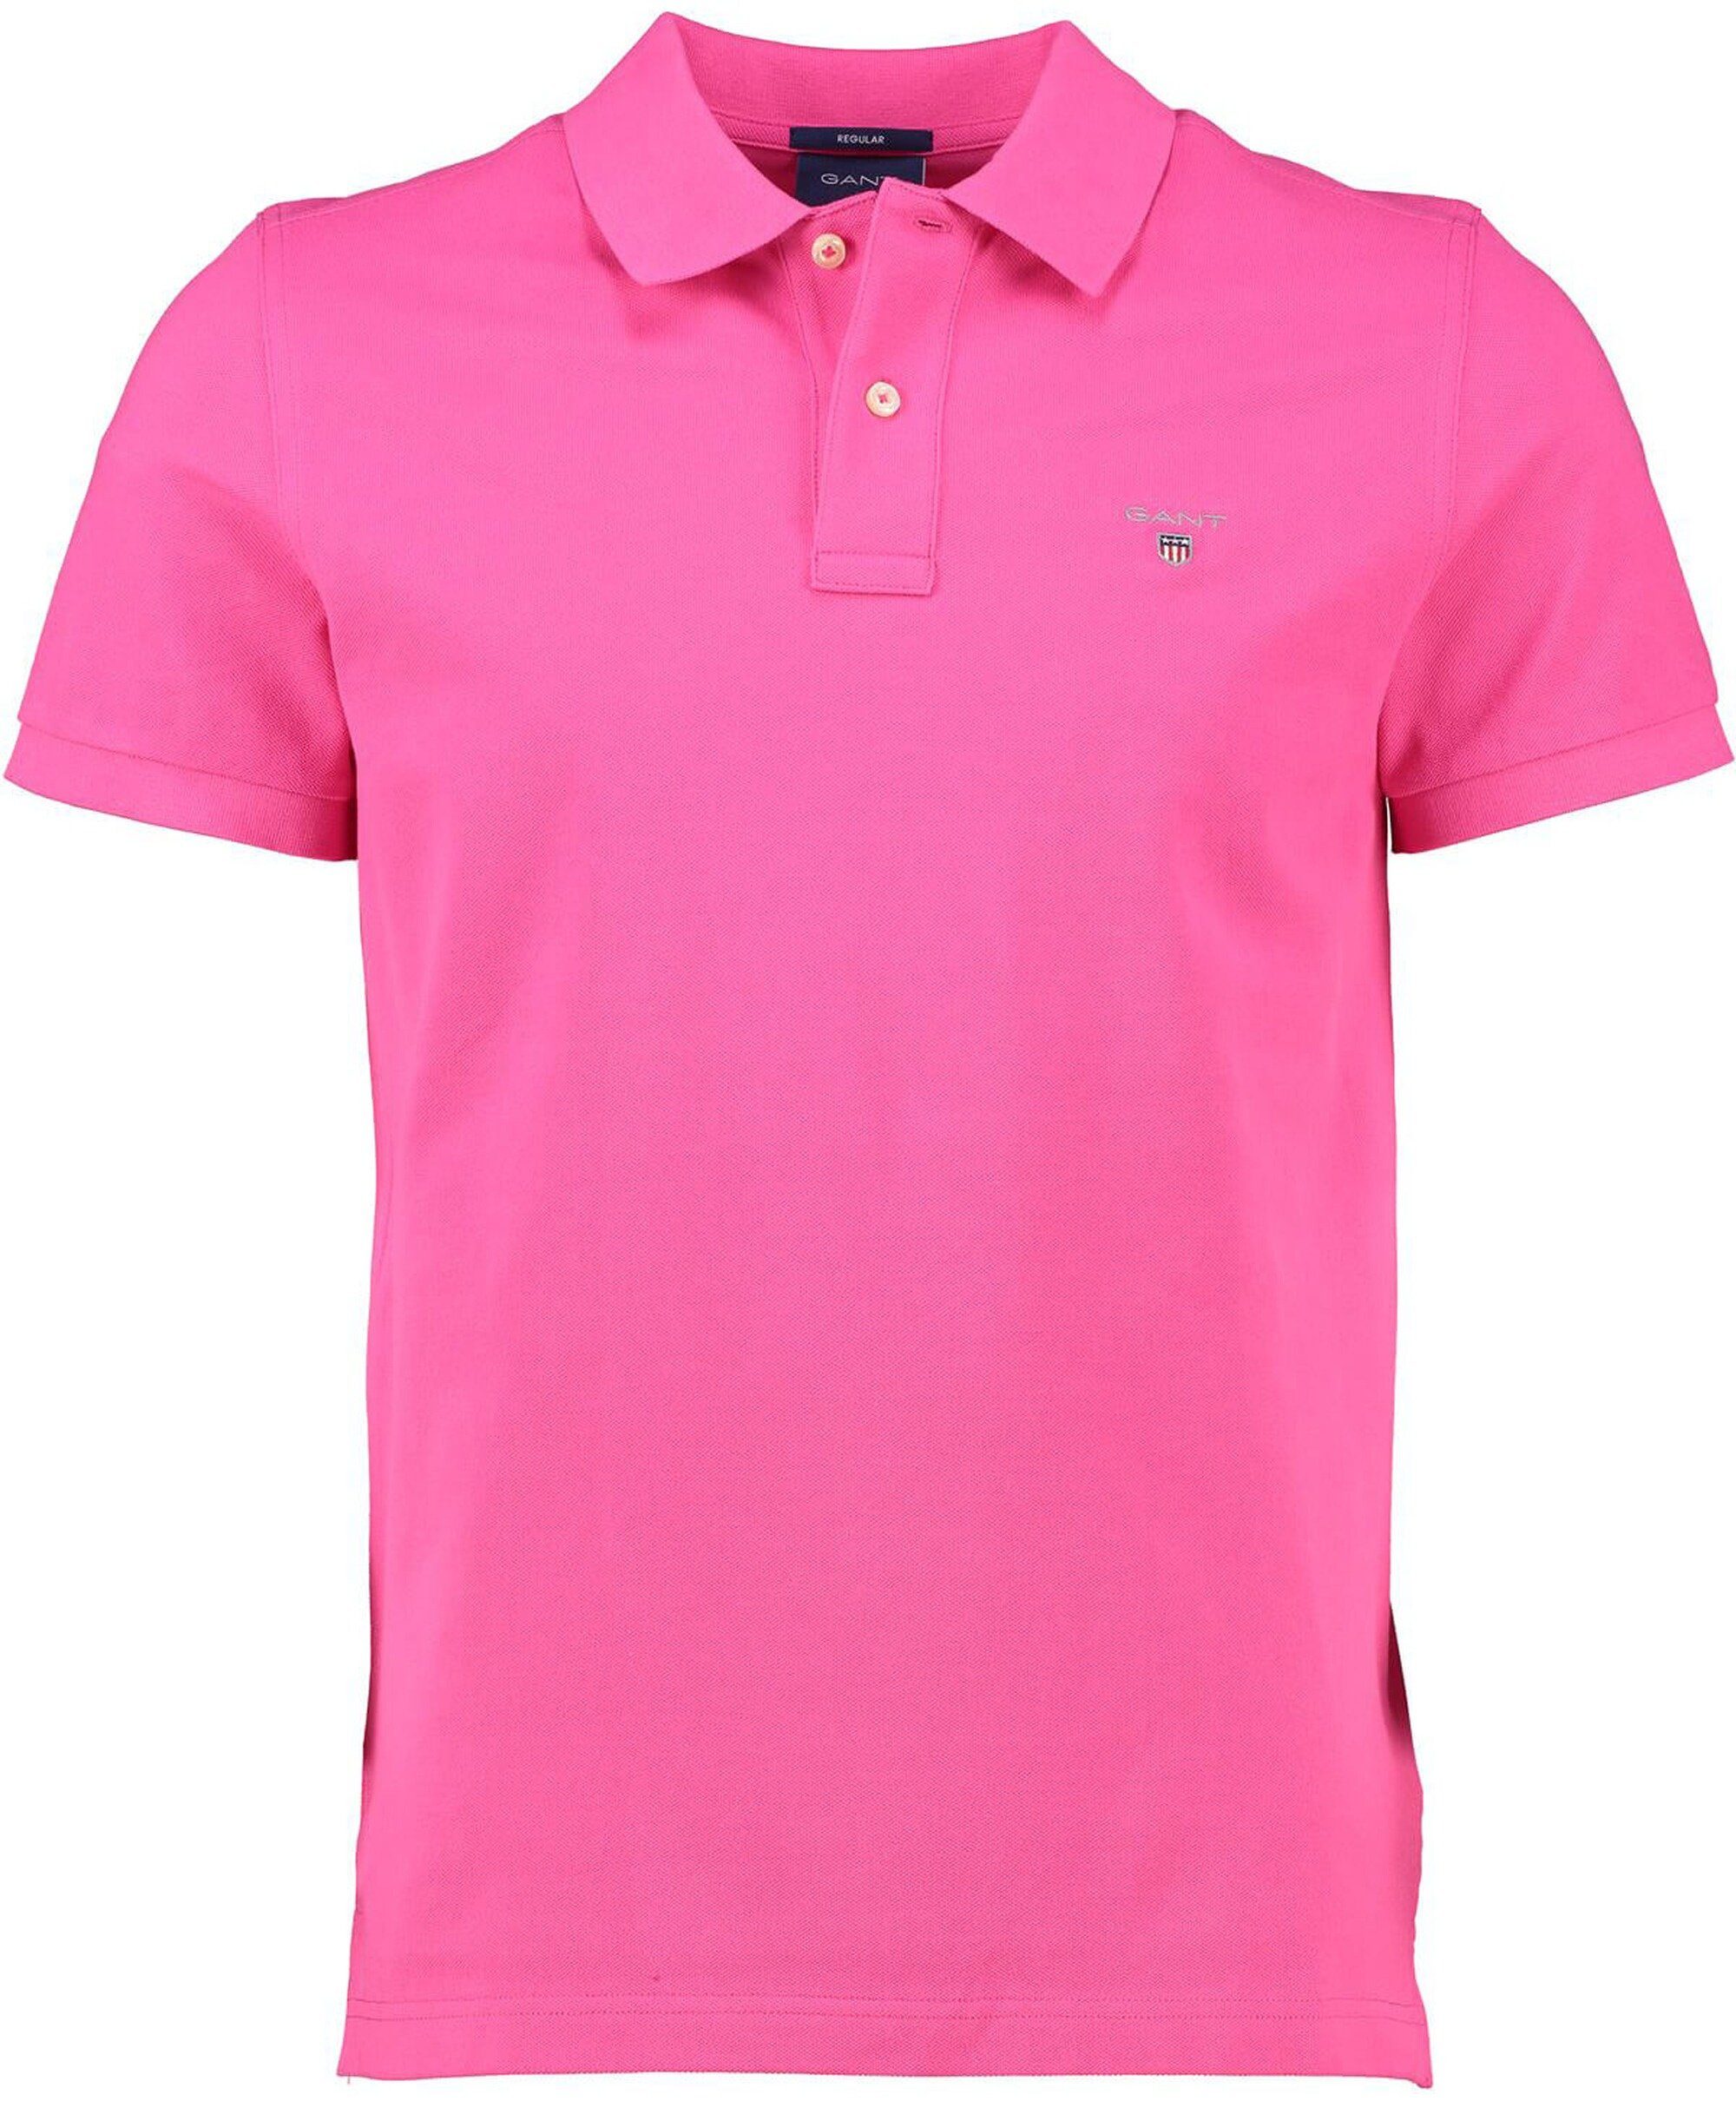 pink GANT pink Rugger Polo-Shirt Original Poloshirt Gant hyper